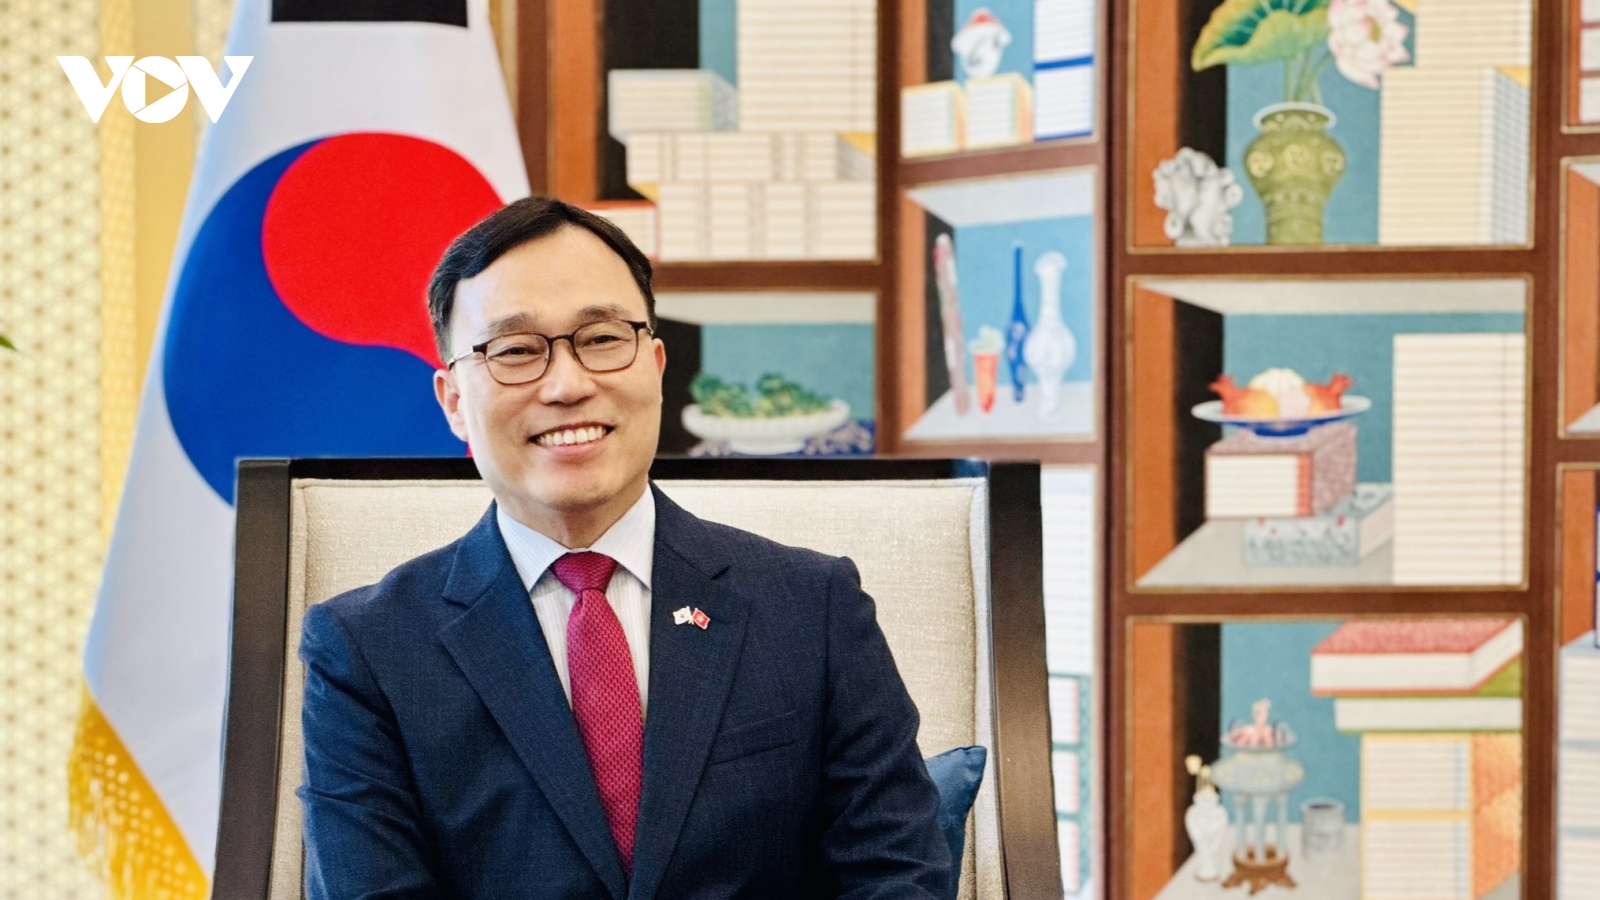 Chuyến thăm Hàn Quốc của Thủ tướng là bước ngoặt lịch sử nâng tầm quan hệ Việt - Hàn